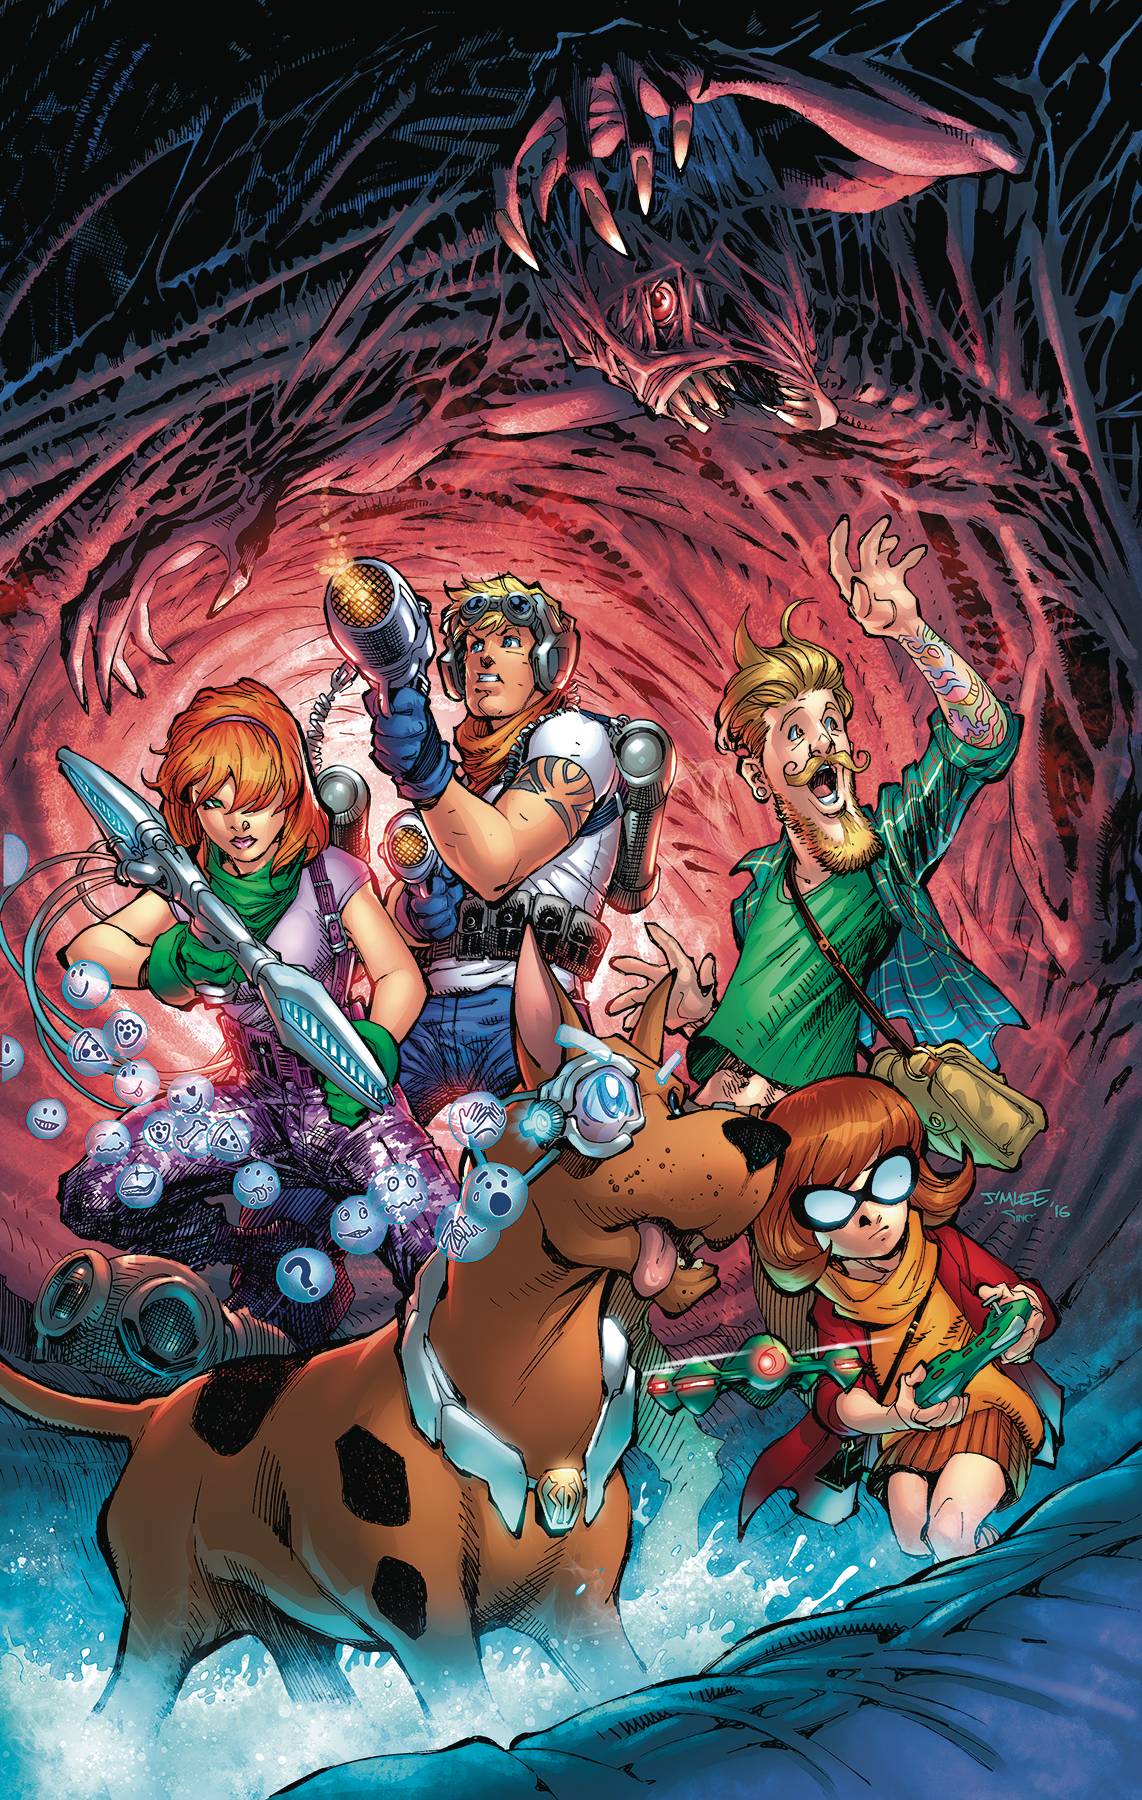 Scooby Apocalypse Graphic Novel Volume 1